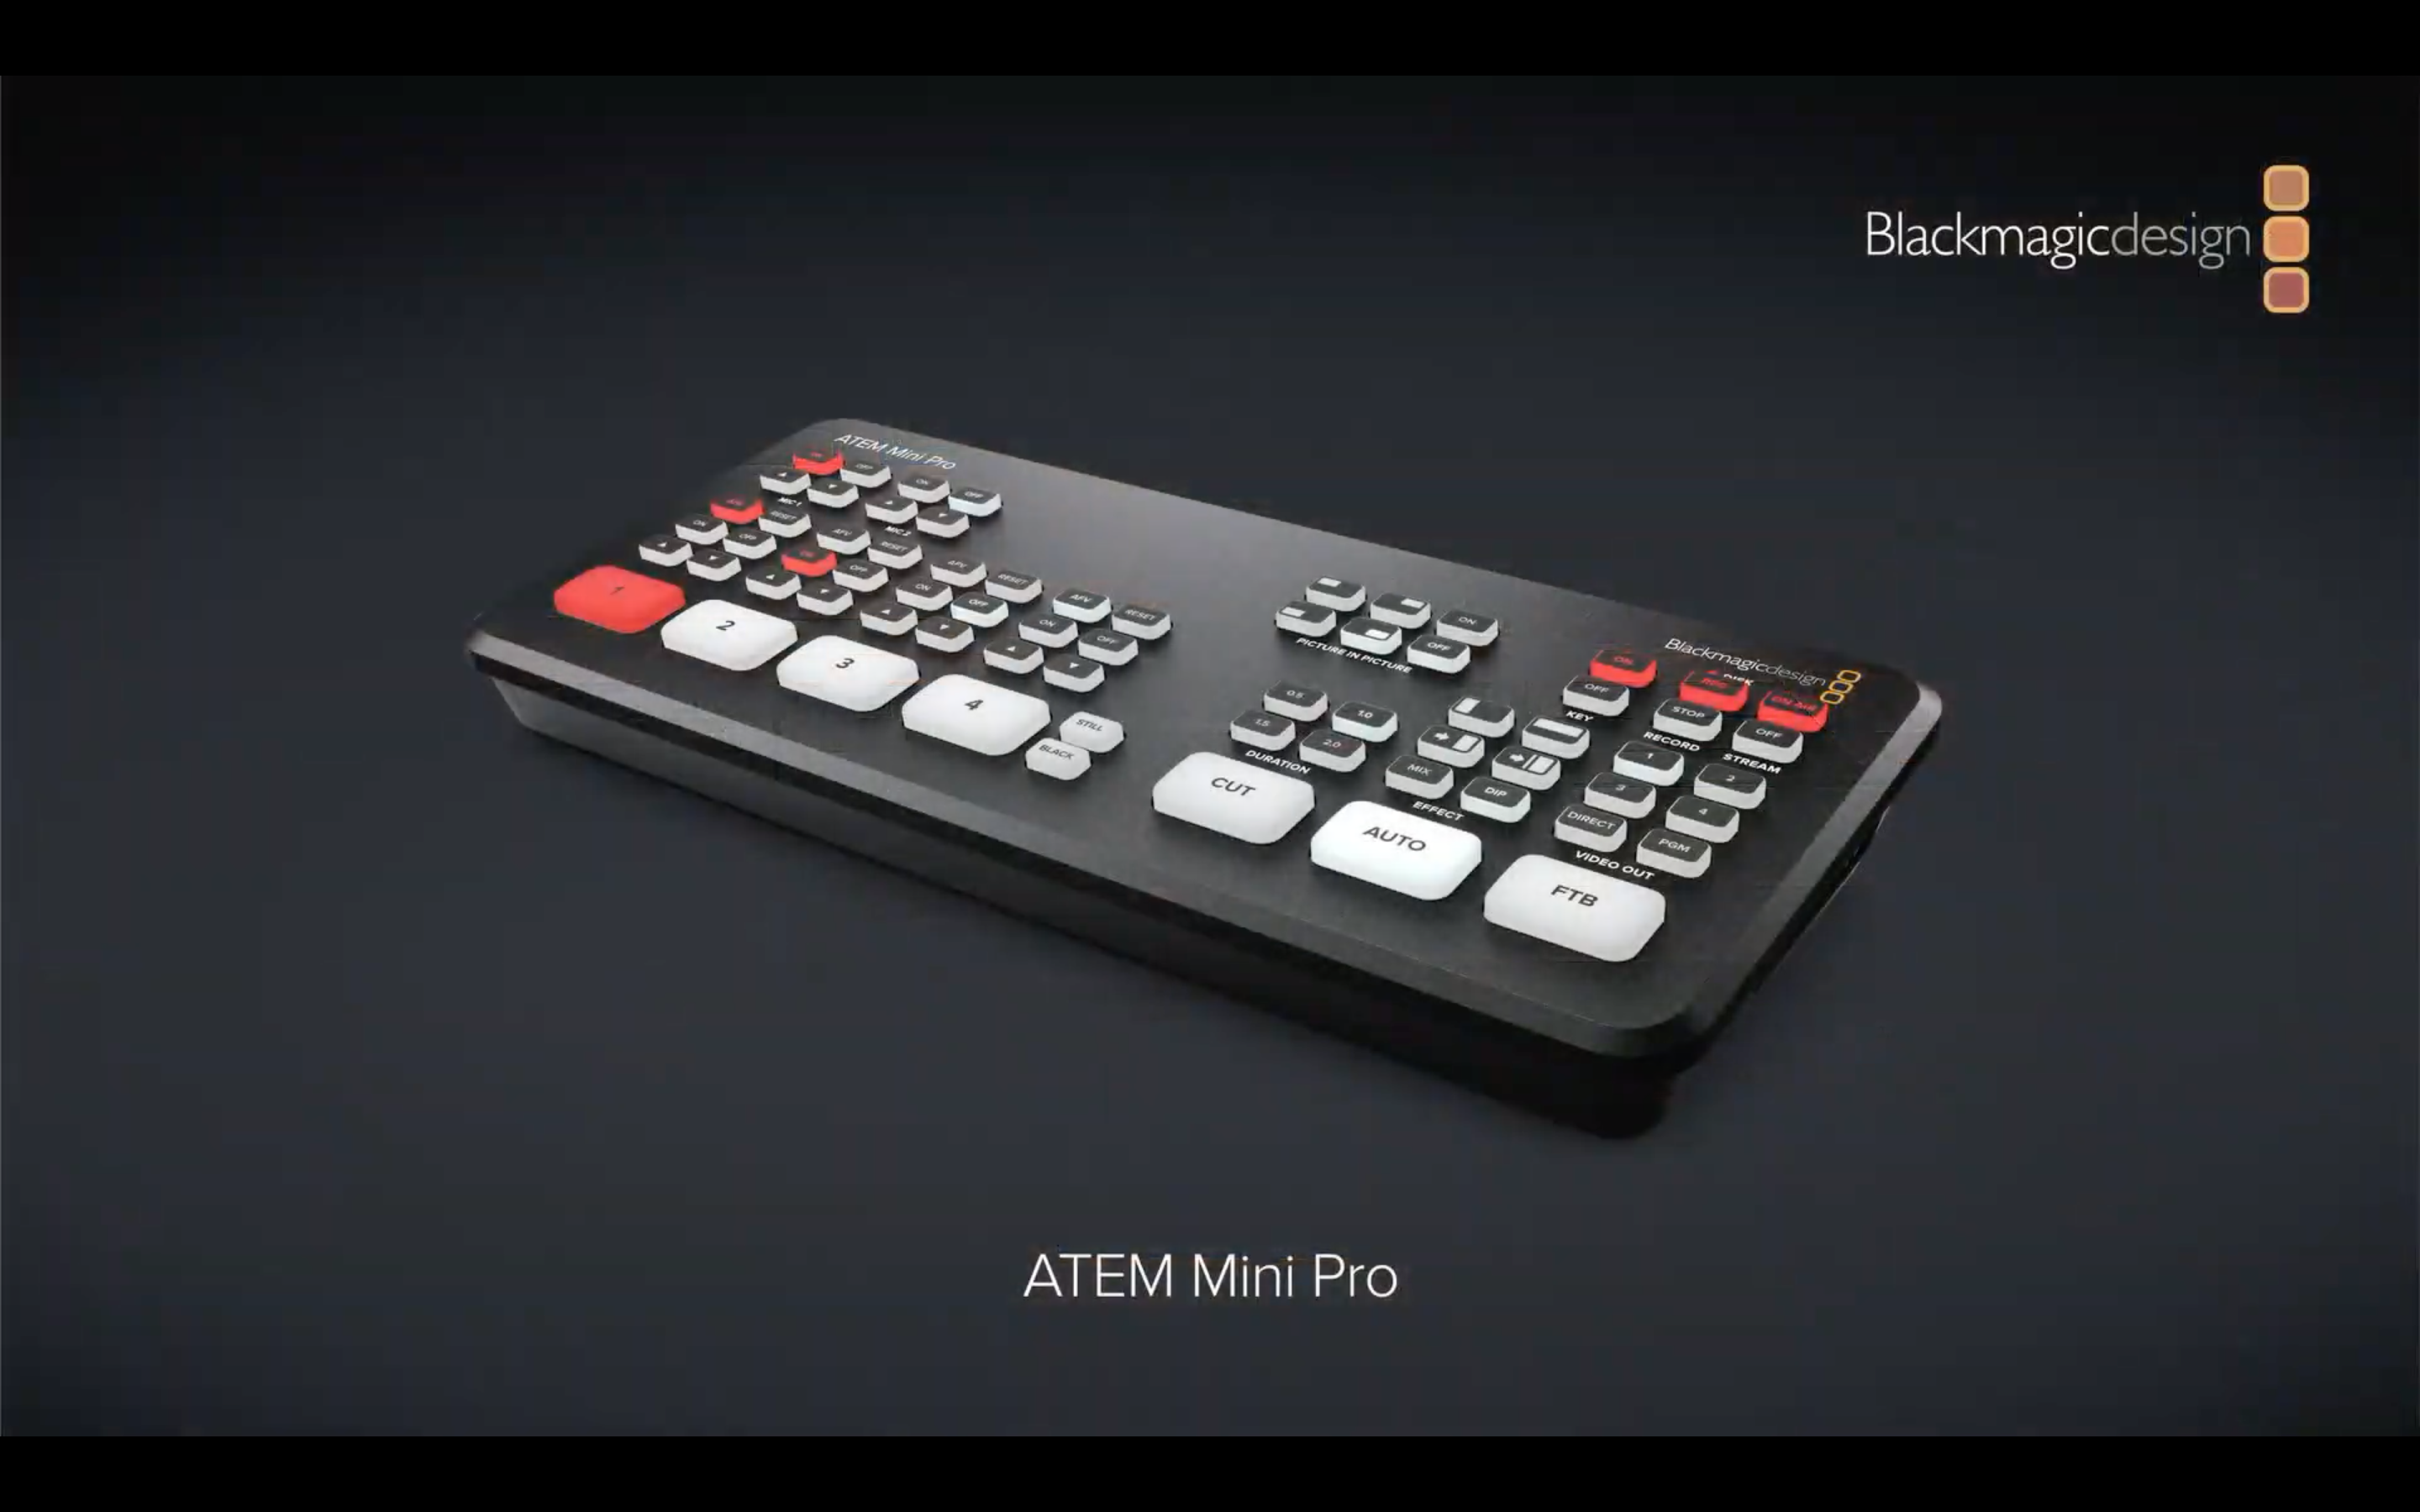 Blackmagic Design Announces New ATEM Mini Pro